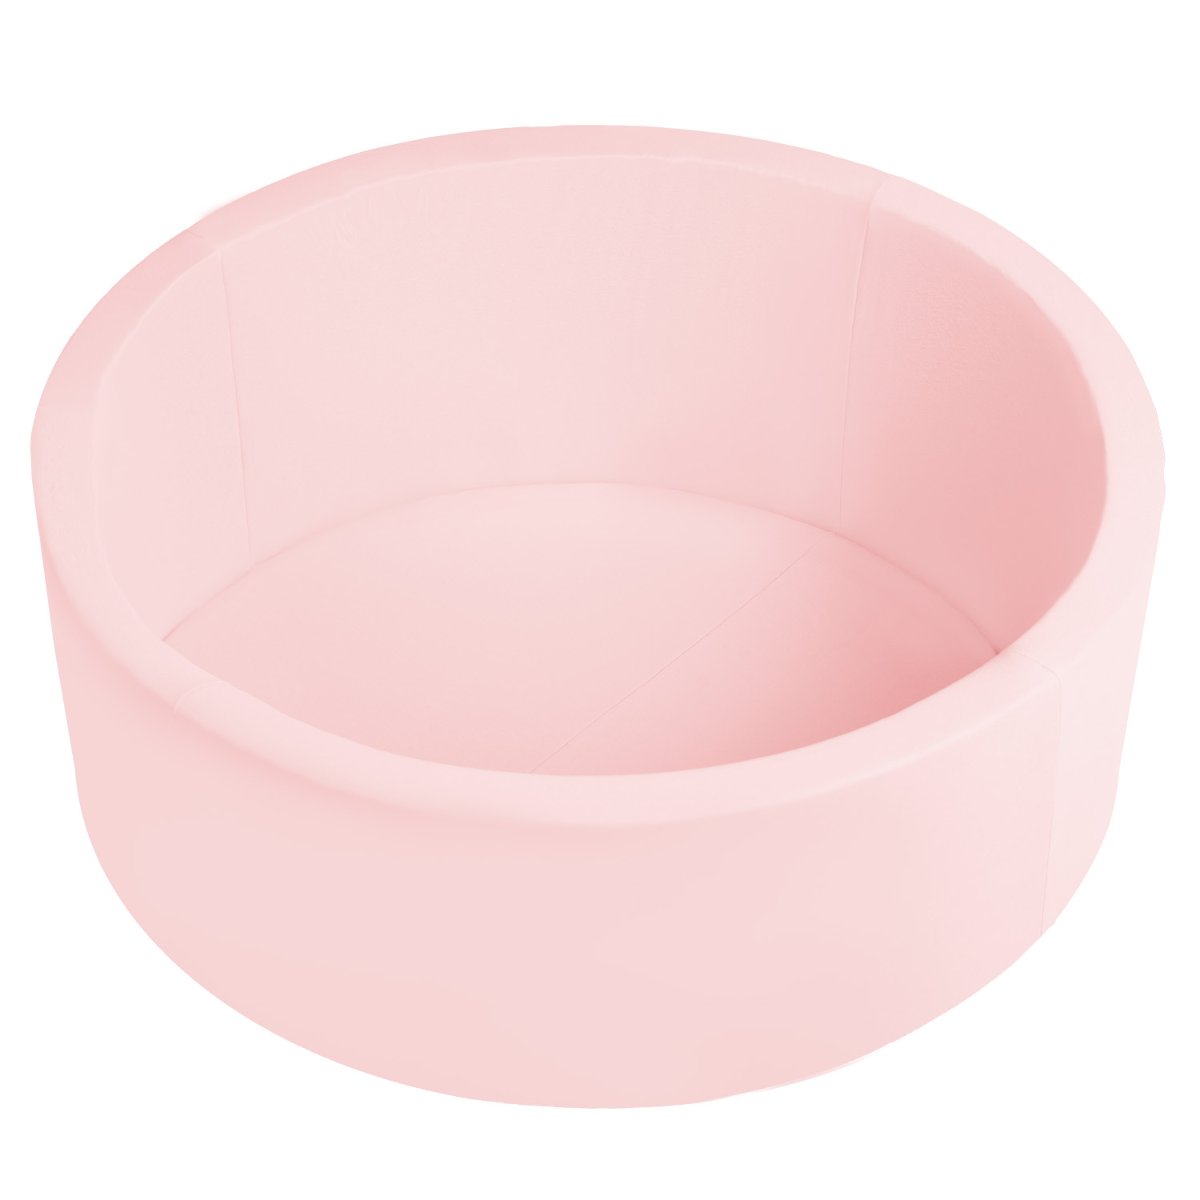 Selonis, suchy basen okrągły z piłeczkami 6cm różowy: babyblue-pudrowy róż-perła 90x30cm/BEZkulek